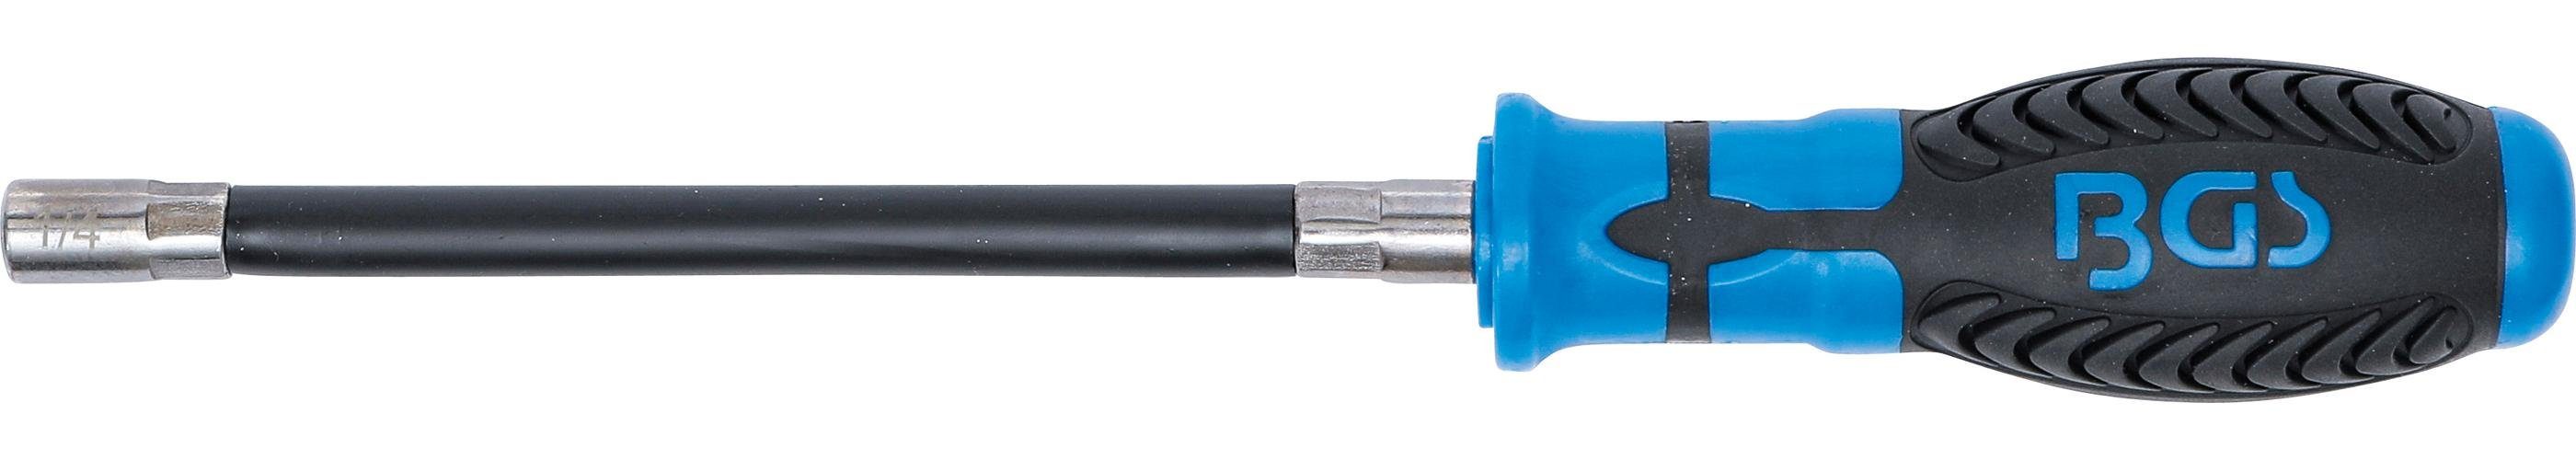 Innensechskant Bits flexiblem mit Abtrieb 6,3 technic für BGS (1/4) Schaft, Ratschenringschlüssel Bit-Schraubendreher mm